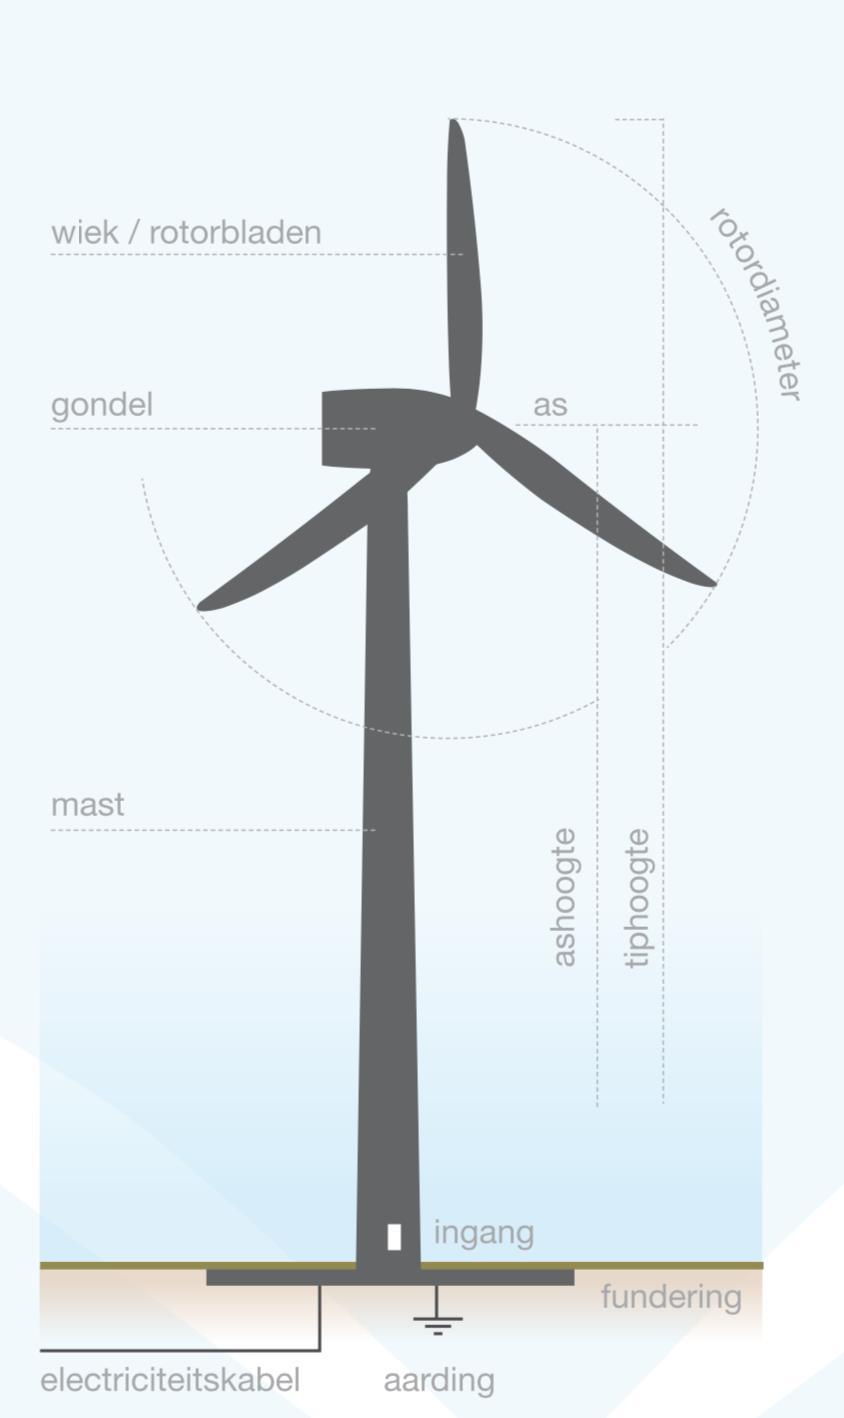 Windmolen met een vermogen van 3 MW Ashoogte van 100 meter Tiphoogte van 145 meter Rotordiameter van 90 meter Levert tussen 8.000.